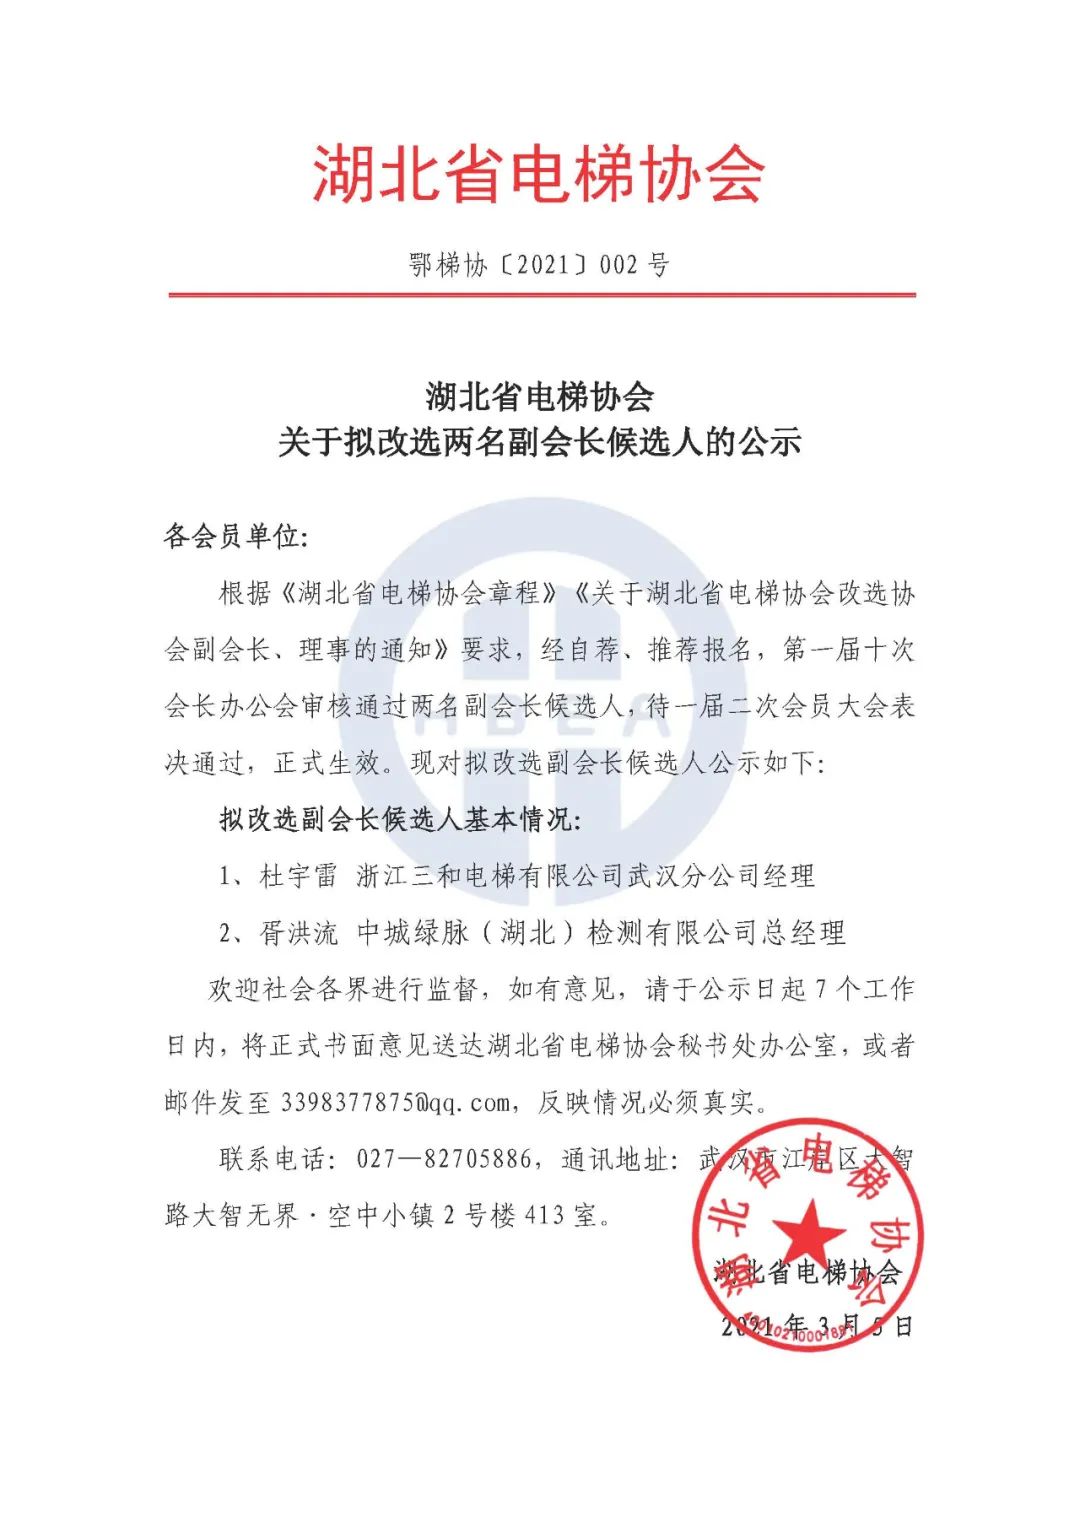 鄂梯协【2021】002号 湖北省电梯协会关于拟改造2名副会长候选人的公示